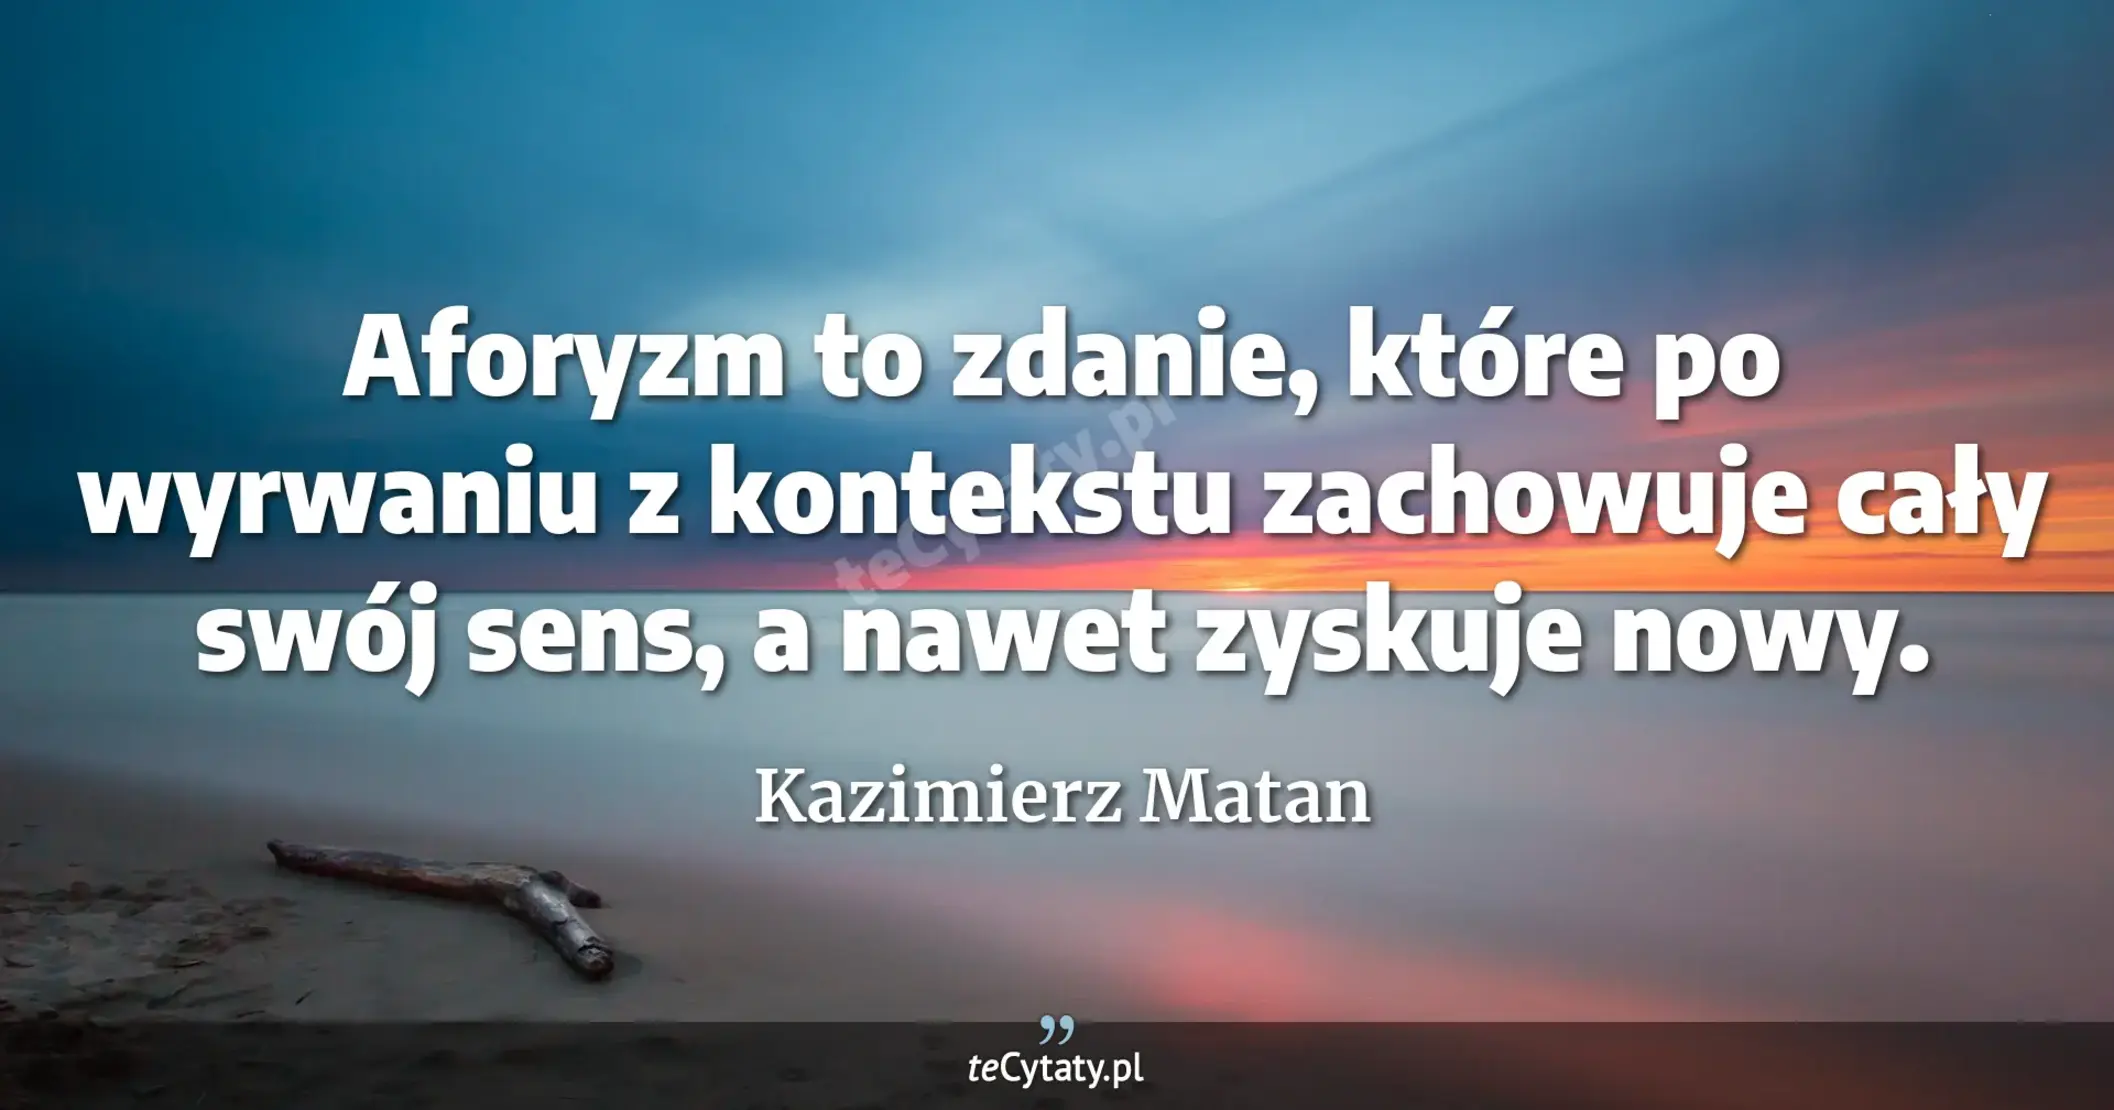 Aforyzm to zdanie, które po wyrwaniu z kontekstu zachowuje cały swój sens, a nawet zyskuje nowy. - Kazimierz Matan